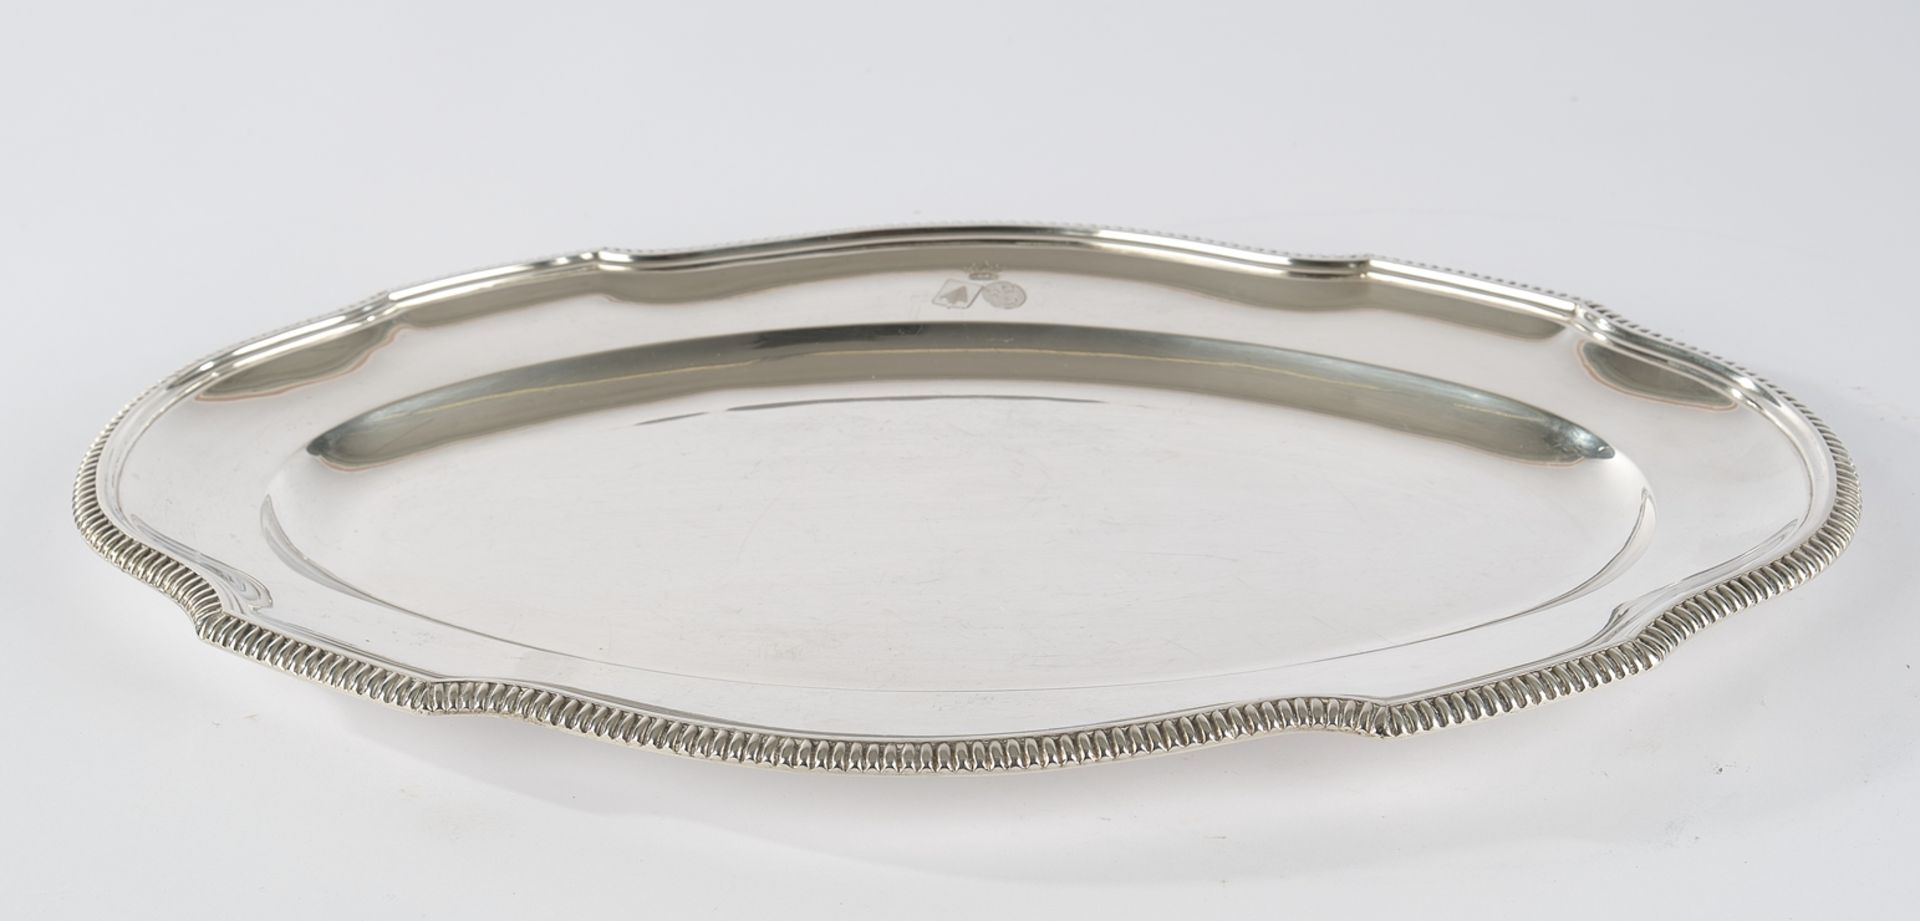 Vorlegeplatte, Silber 800, Belgien, Delheid, ovalförmig, passig-geschweift, umlaufende Zungenbordür